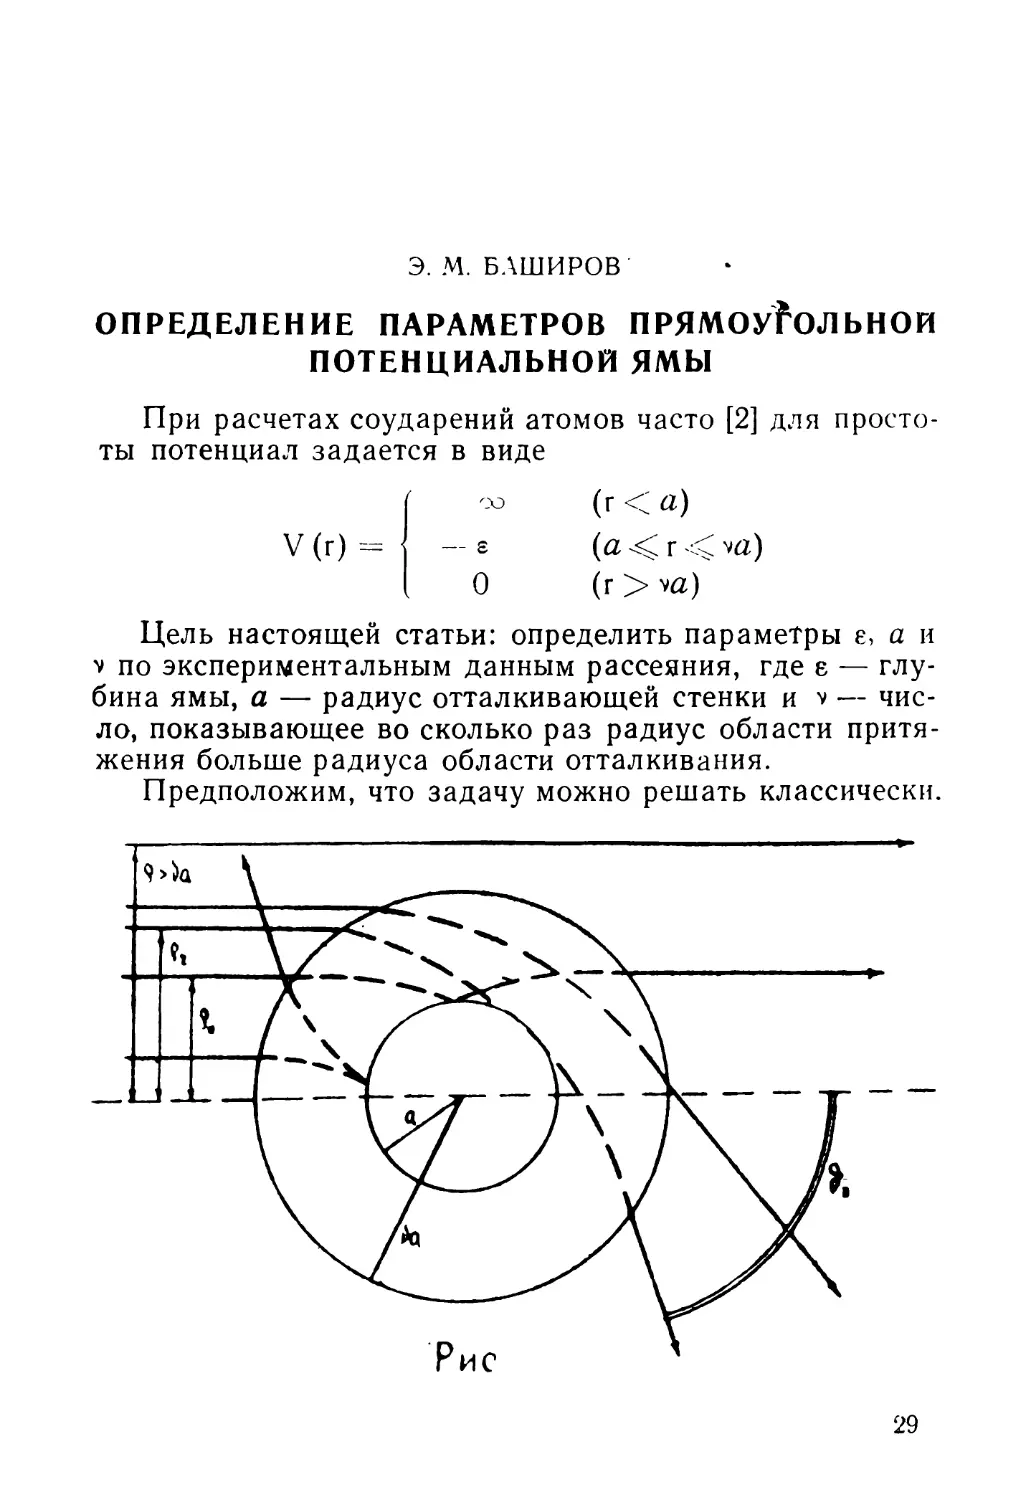 Э. М. Баширов. Определение параметров прямоугольной потенциальной ямы